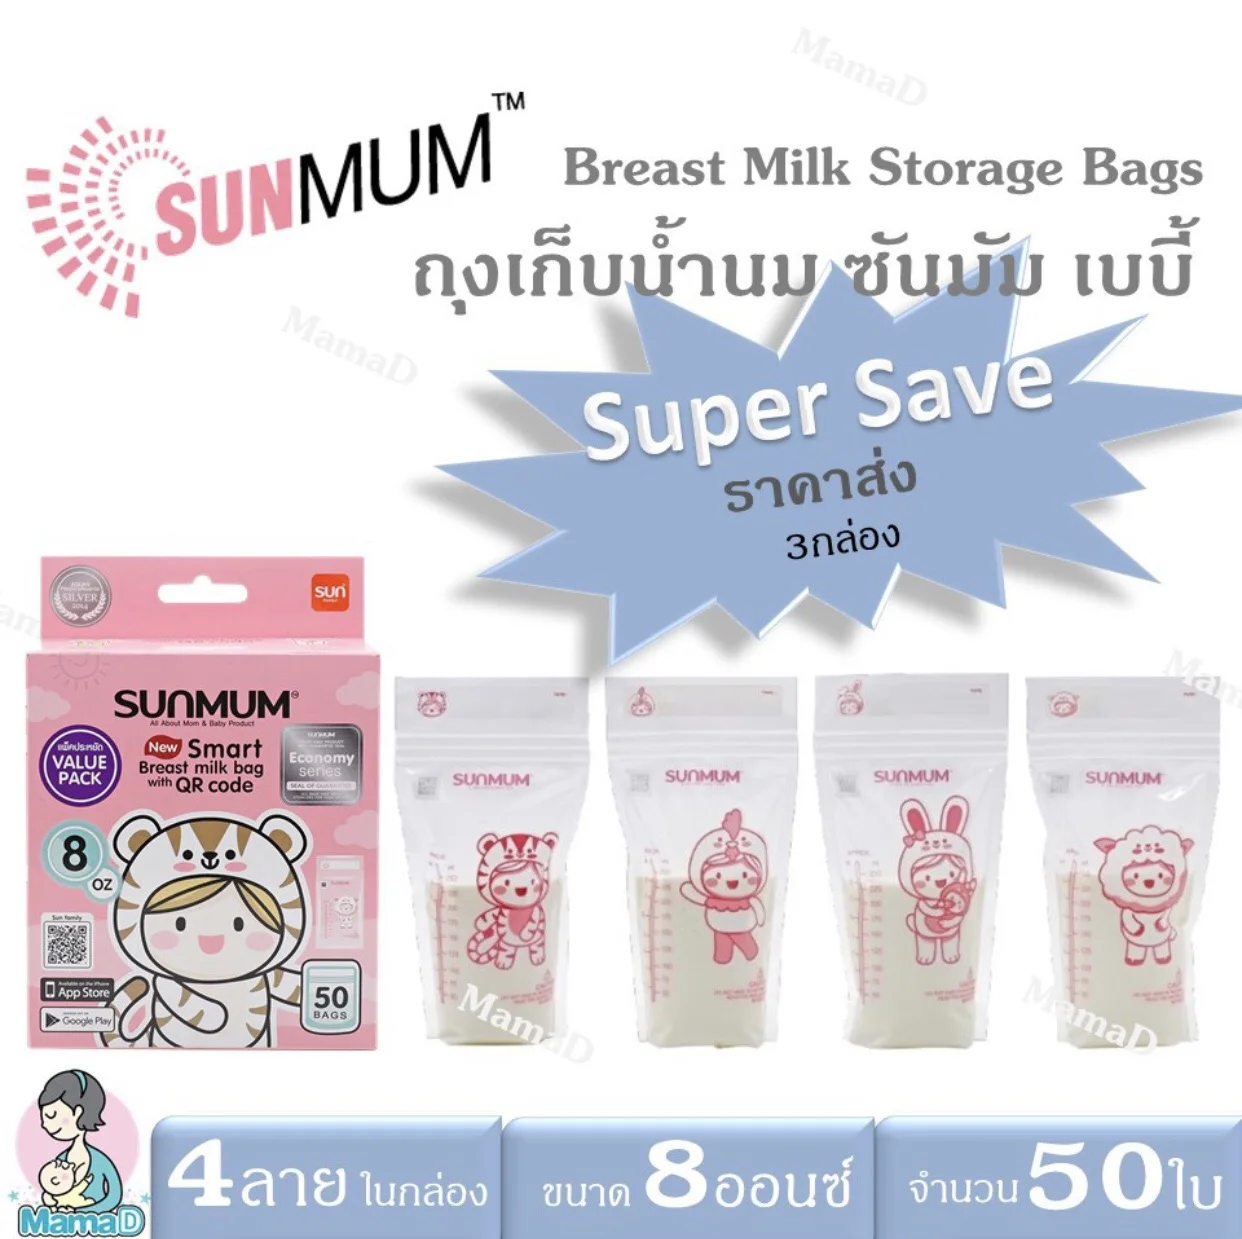 ถุงเก็บน้ำนมแม่ ซันมัม เบบี้ ขนาดบรรจุ 8 ออนซ์ จำนวน 50 ใบ/กล่องBreast Milk Storage Bags SUNMUM Baby Valu